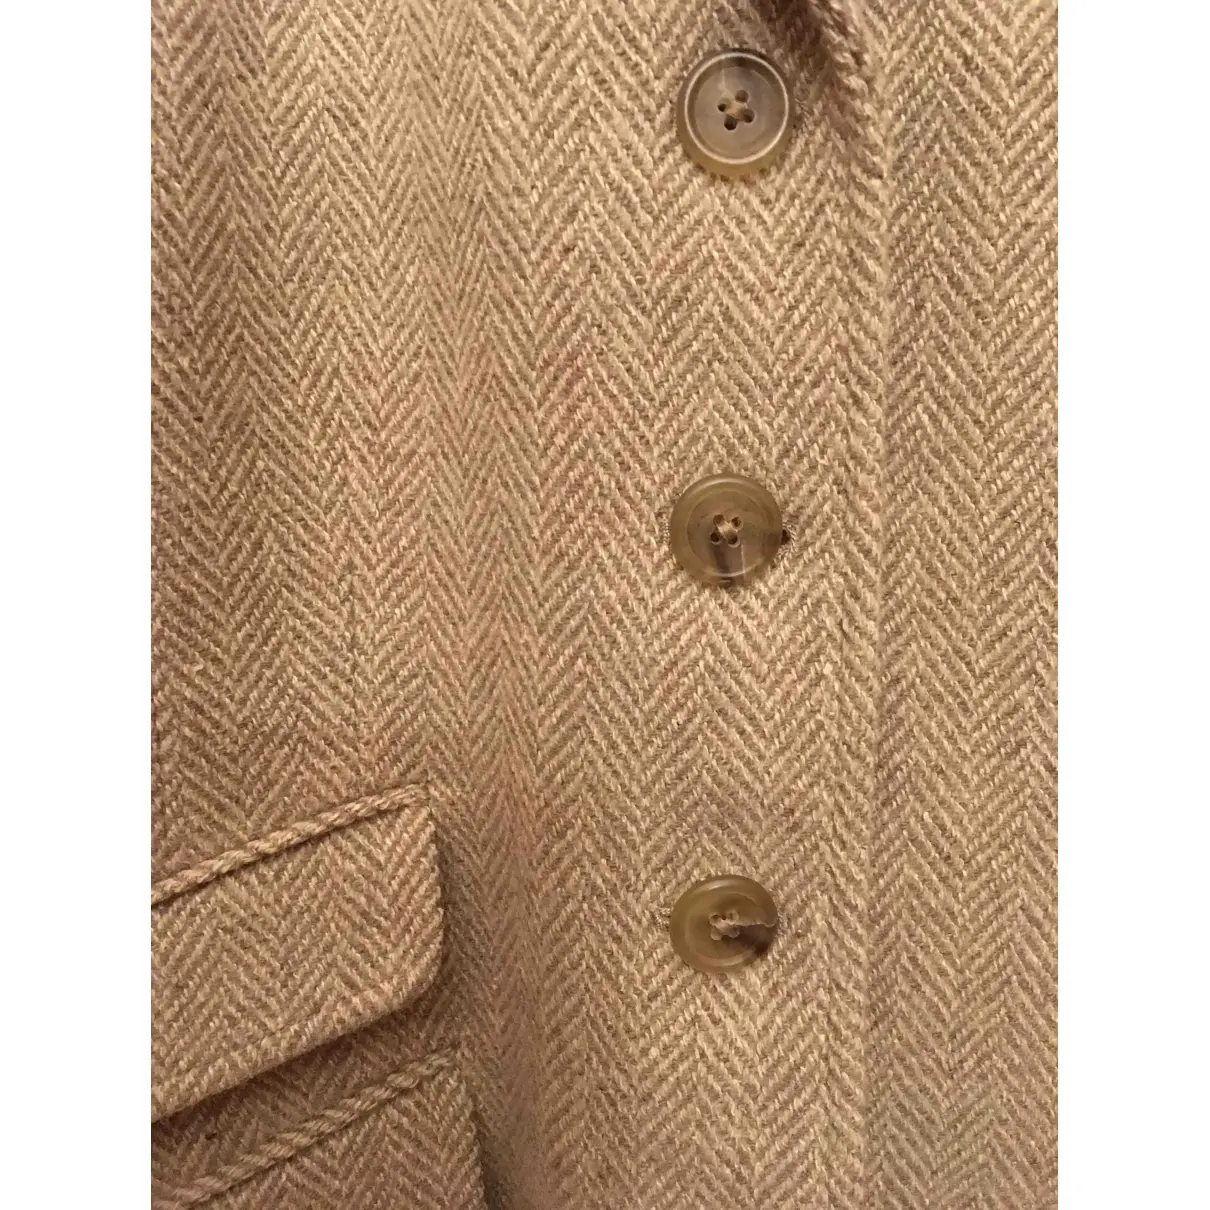 Buy Ralph Lauren Wool blazer online